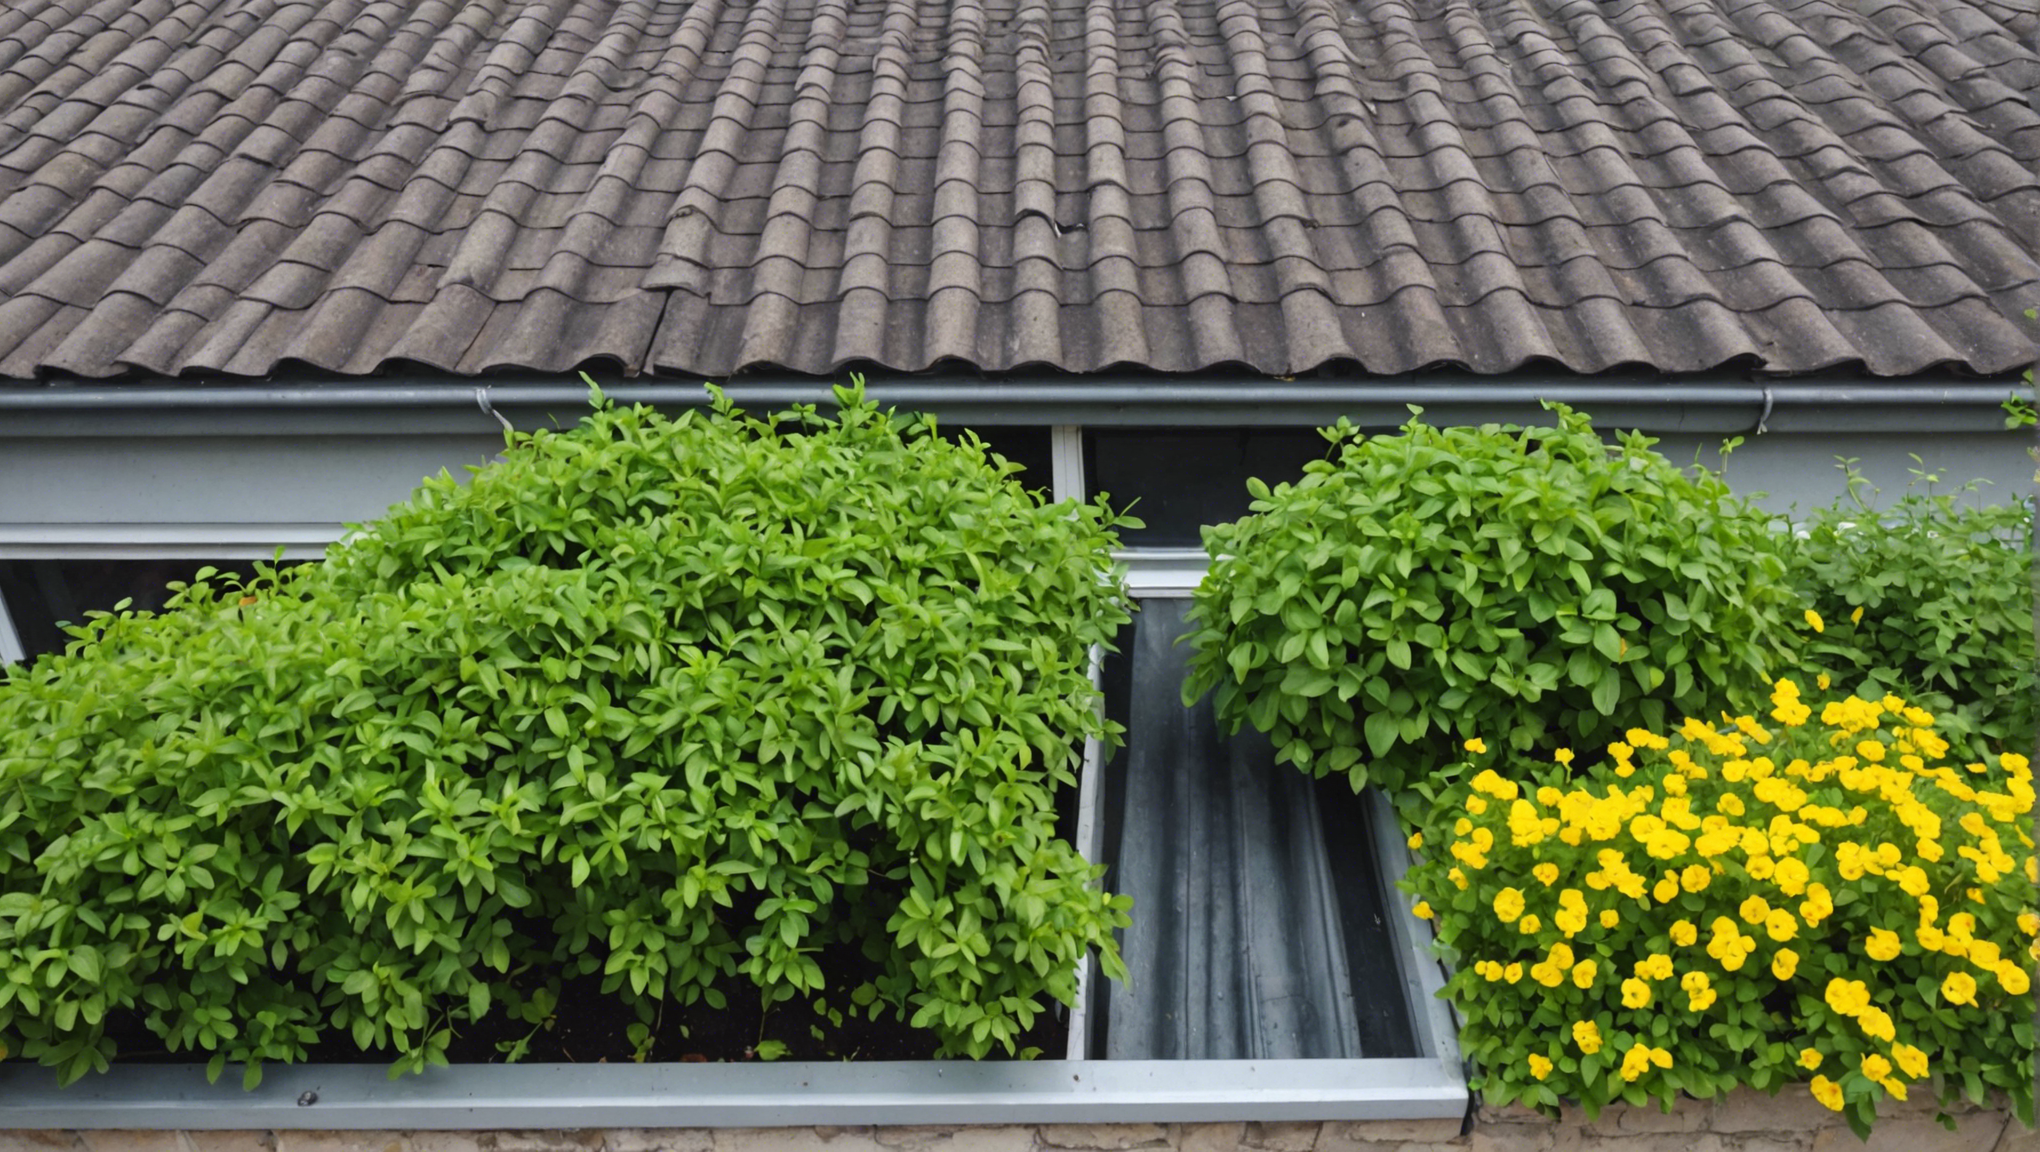 découvrez les avantages d'une toiture végétalisée : économie d'énergie, isolation thermique, biodiversité urbaine. profitez d'un environnement sain et durable avec une toiture végétalisée.